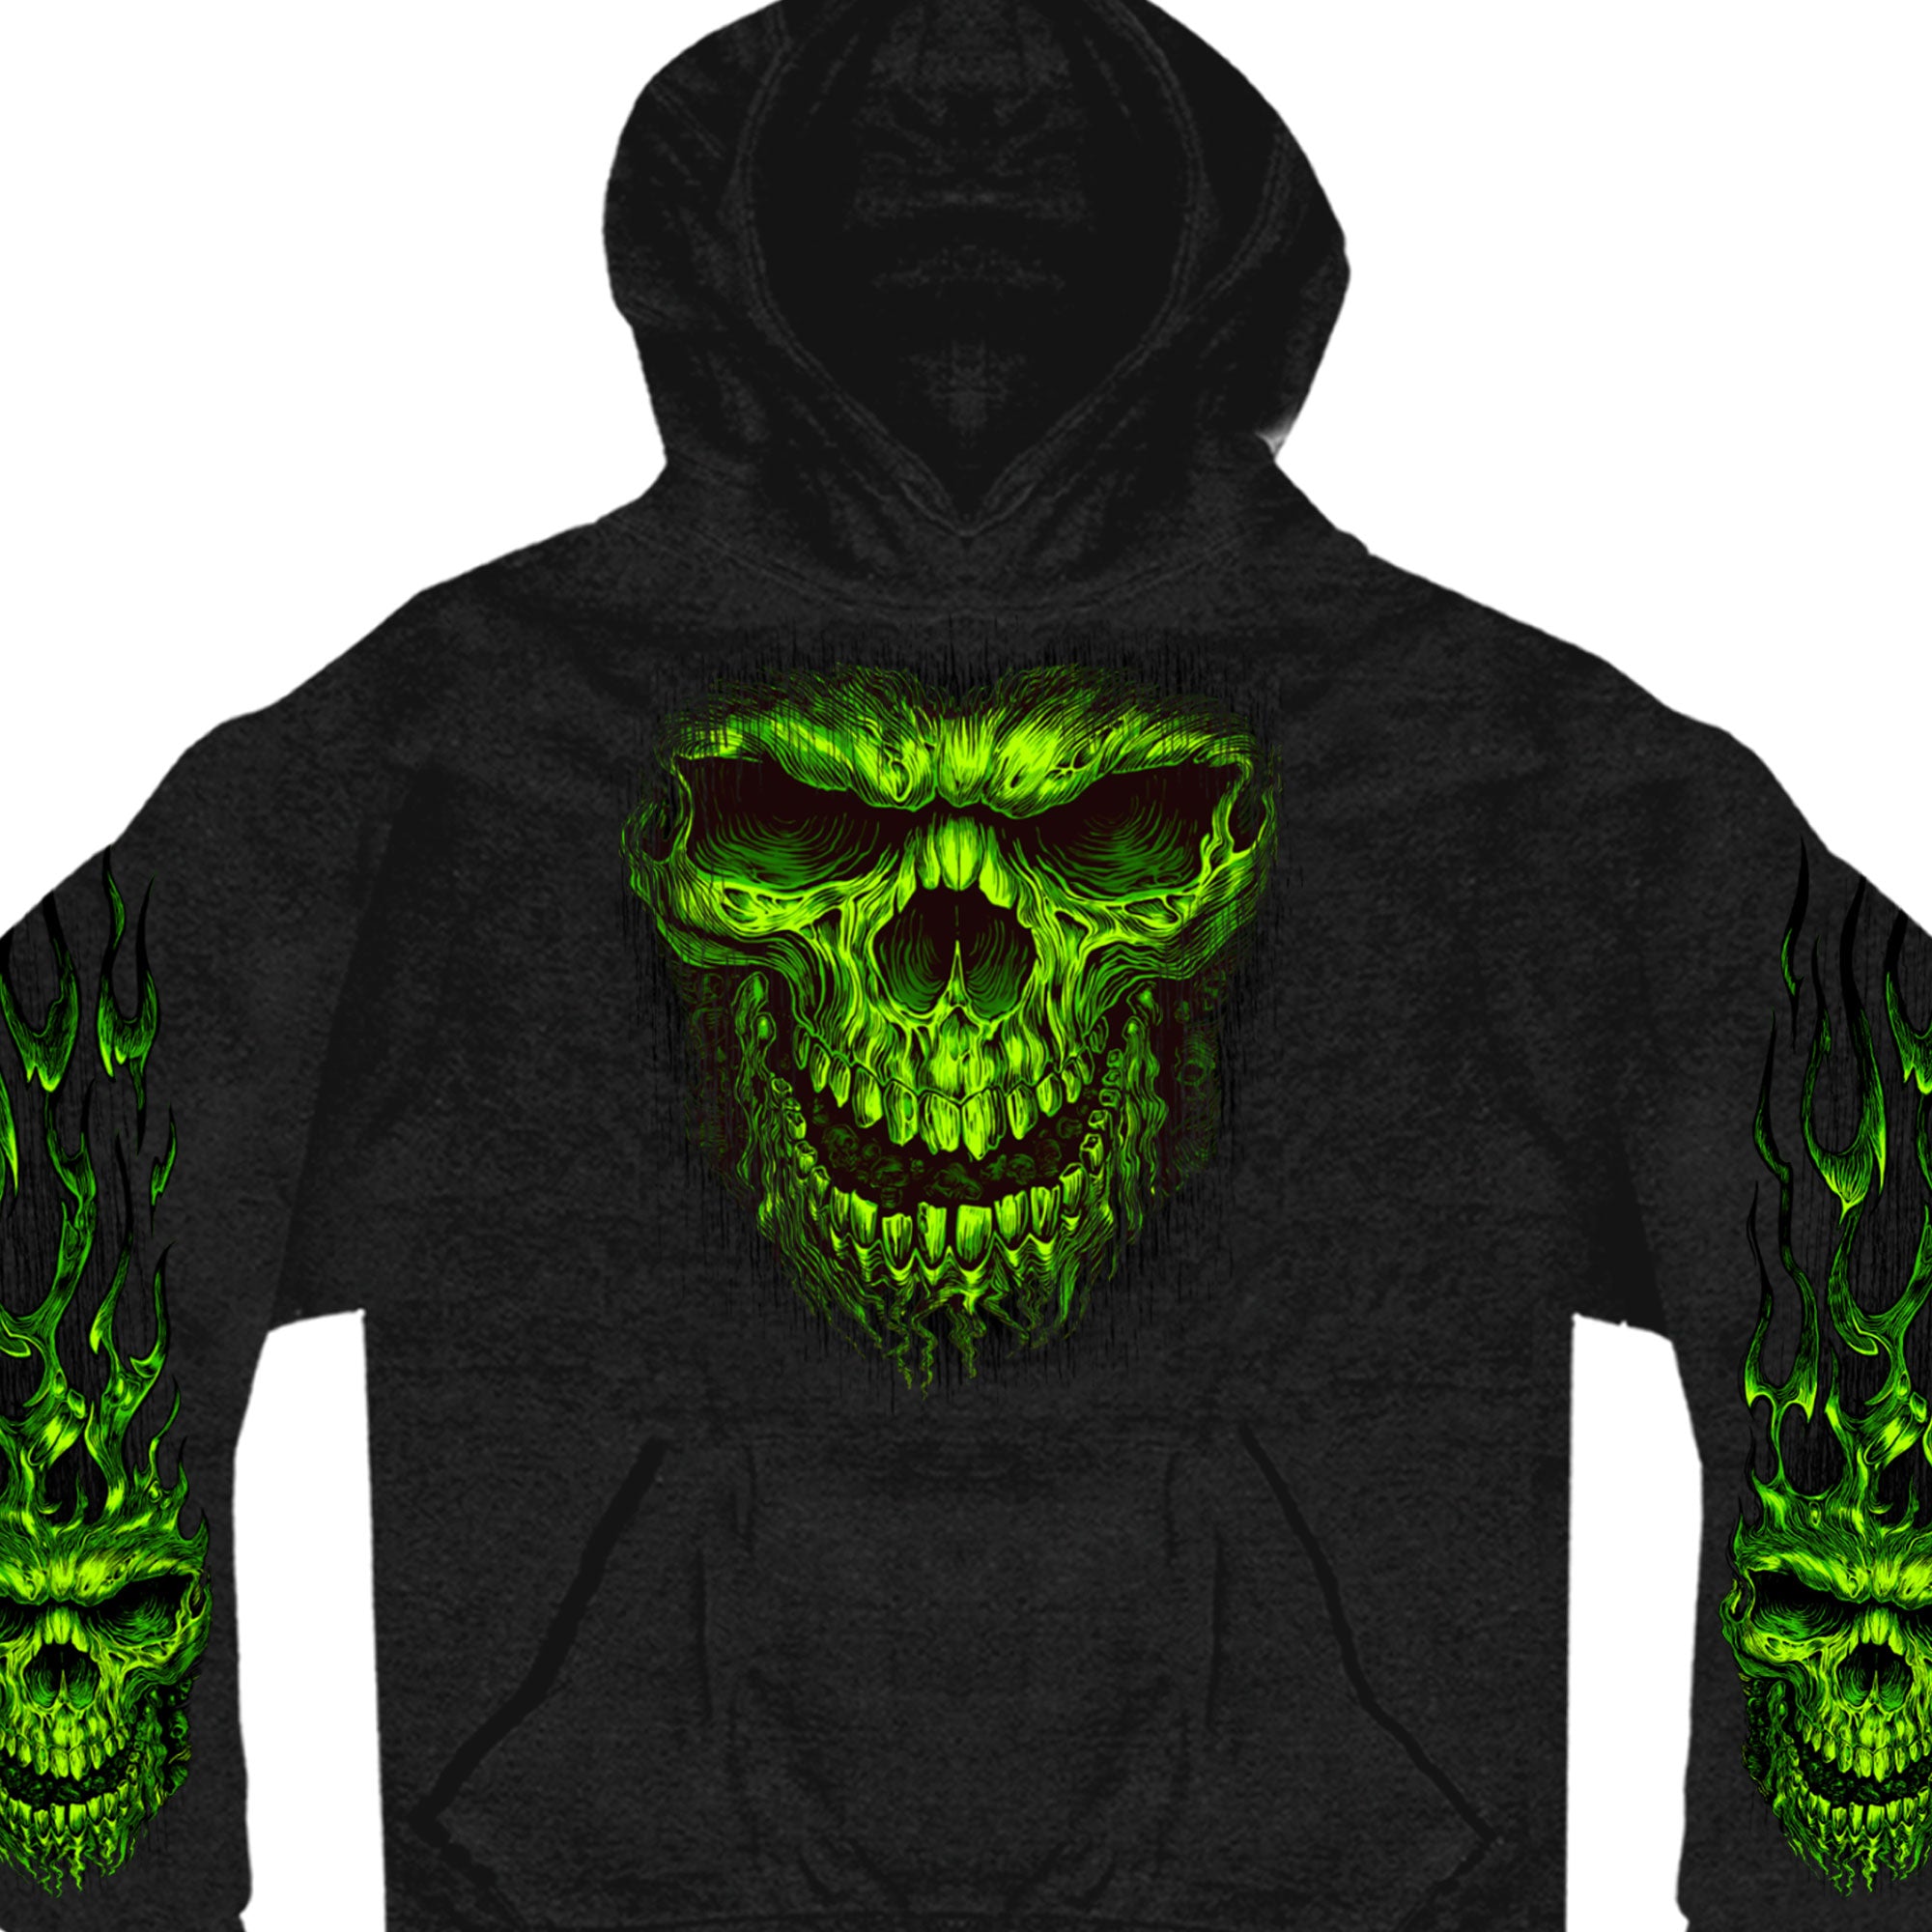 Hot Leathers GMS4023 Men’s Shredder Skull Black Hoodie Sweatshirt